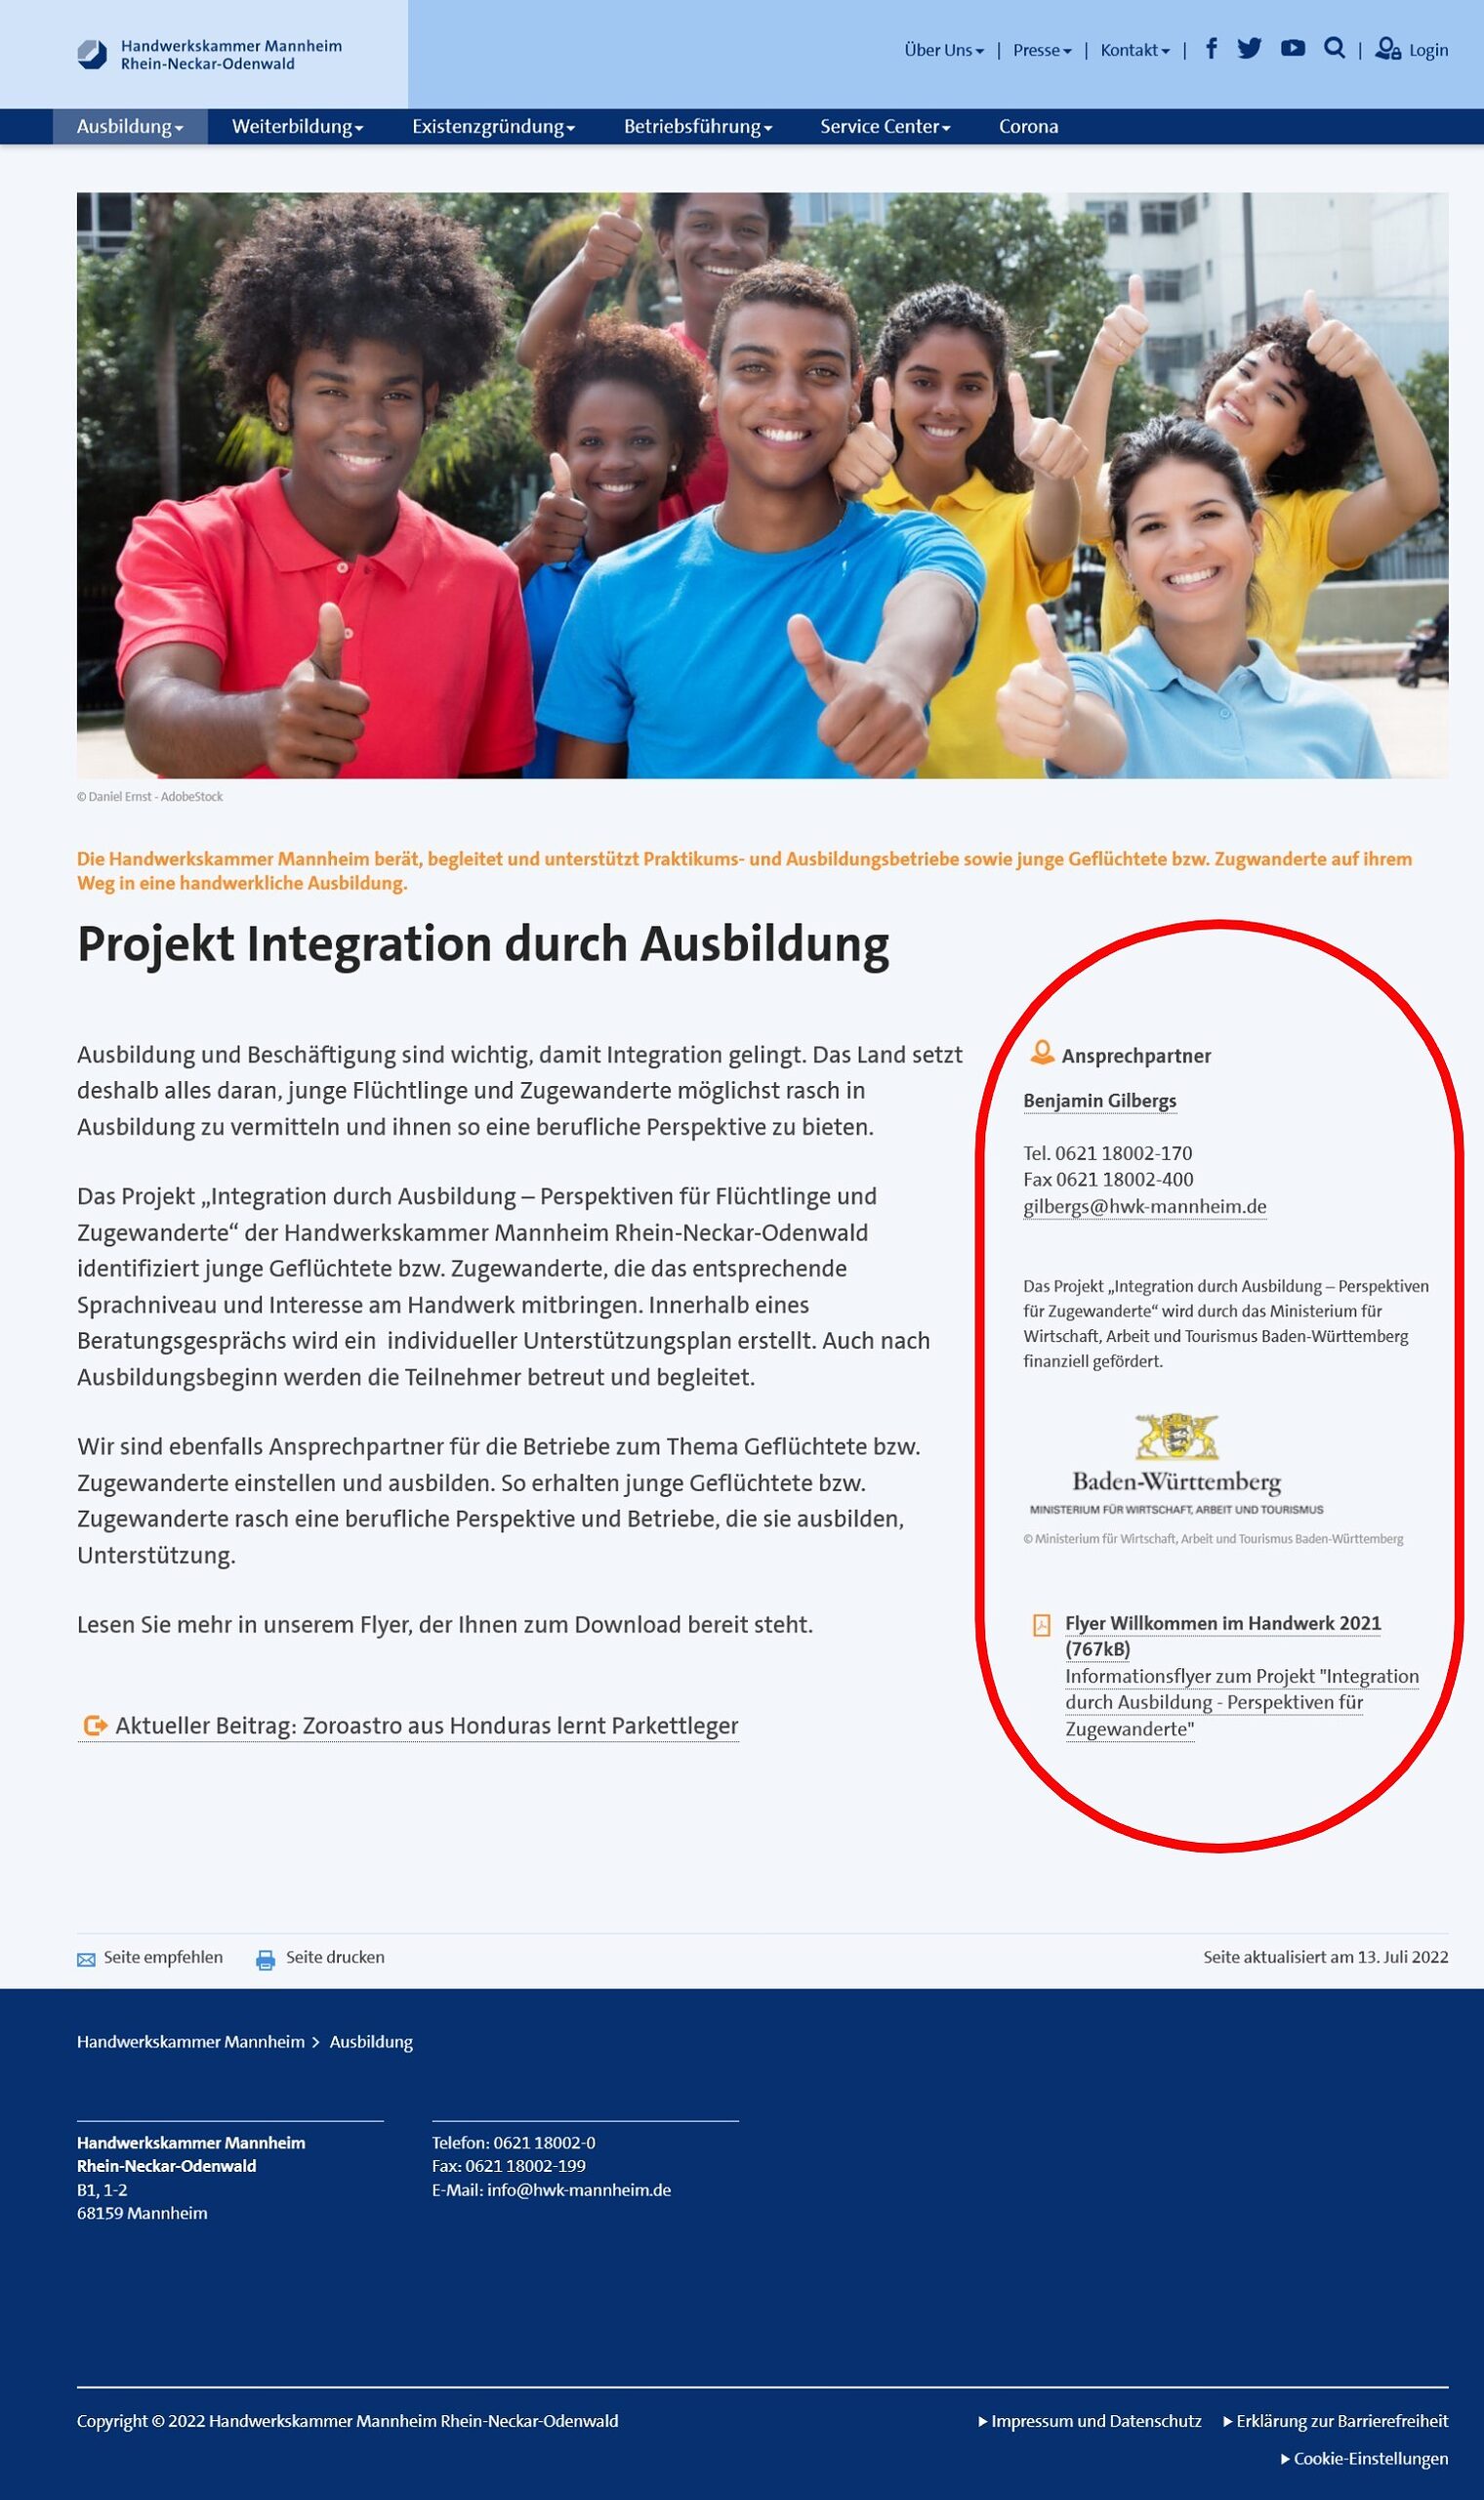 Inhaltsseite auf www.hwk-mannheim.de mit großem Bild oben, Textbeitrag darunter links und Informationen im rechten Bereich